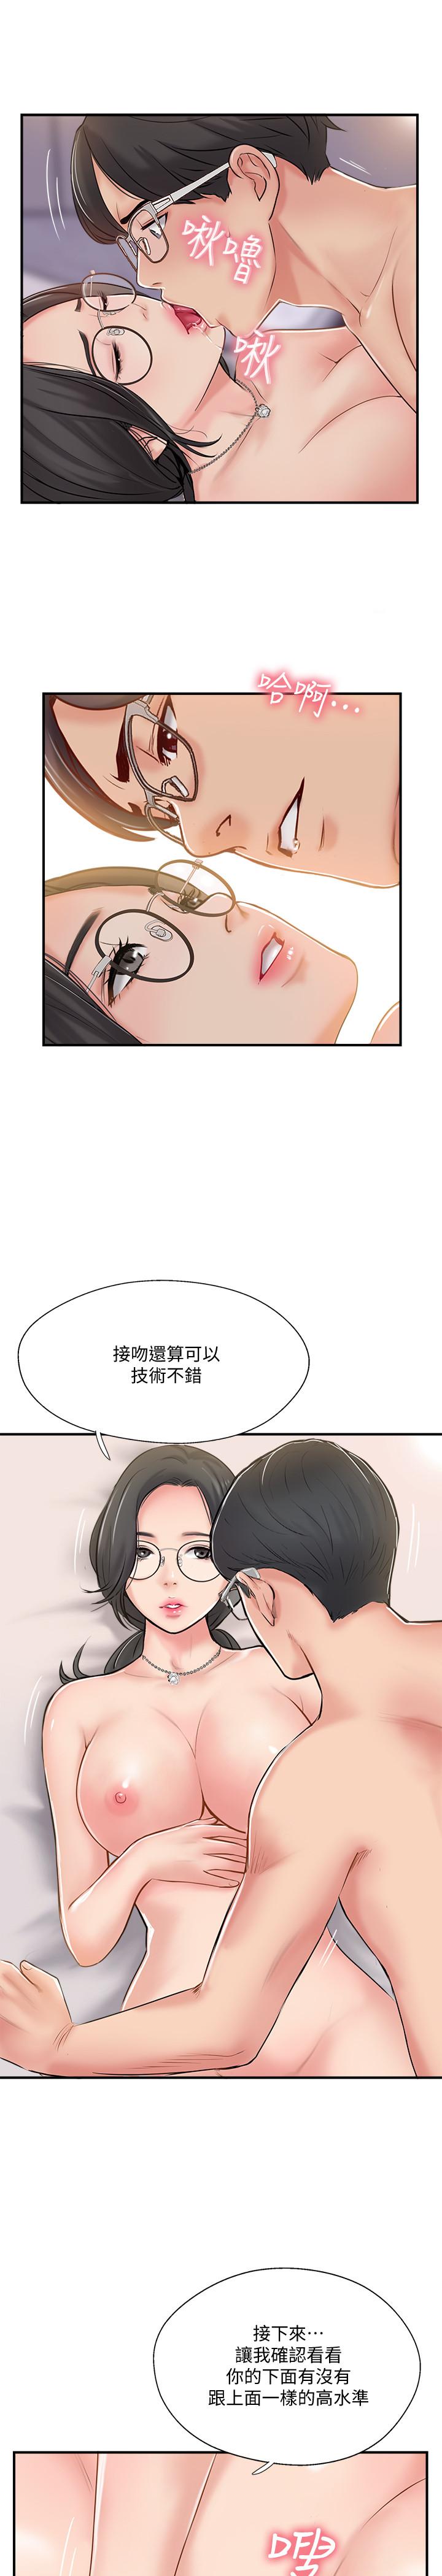 韩国污漫画 完美新伴侶 第21话-征服高傲女人的快感 3